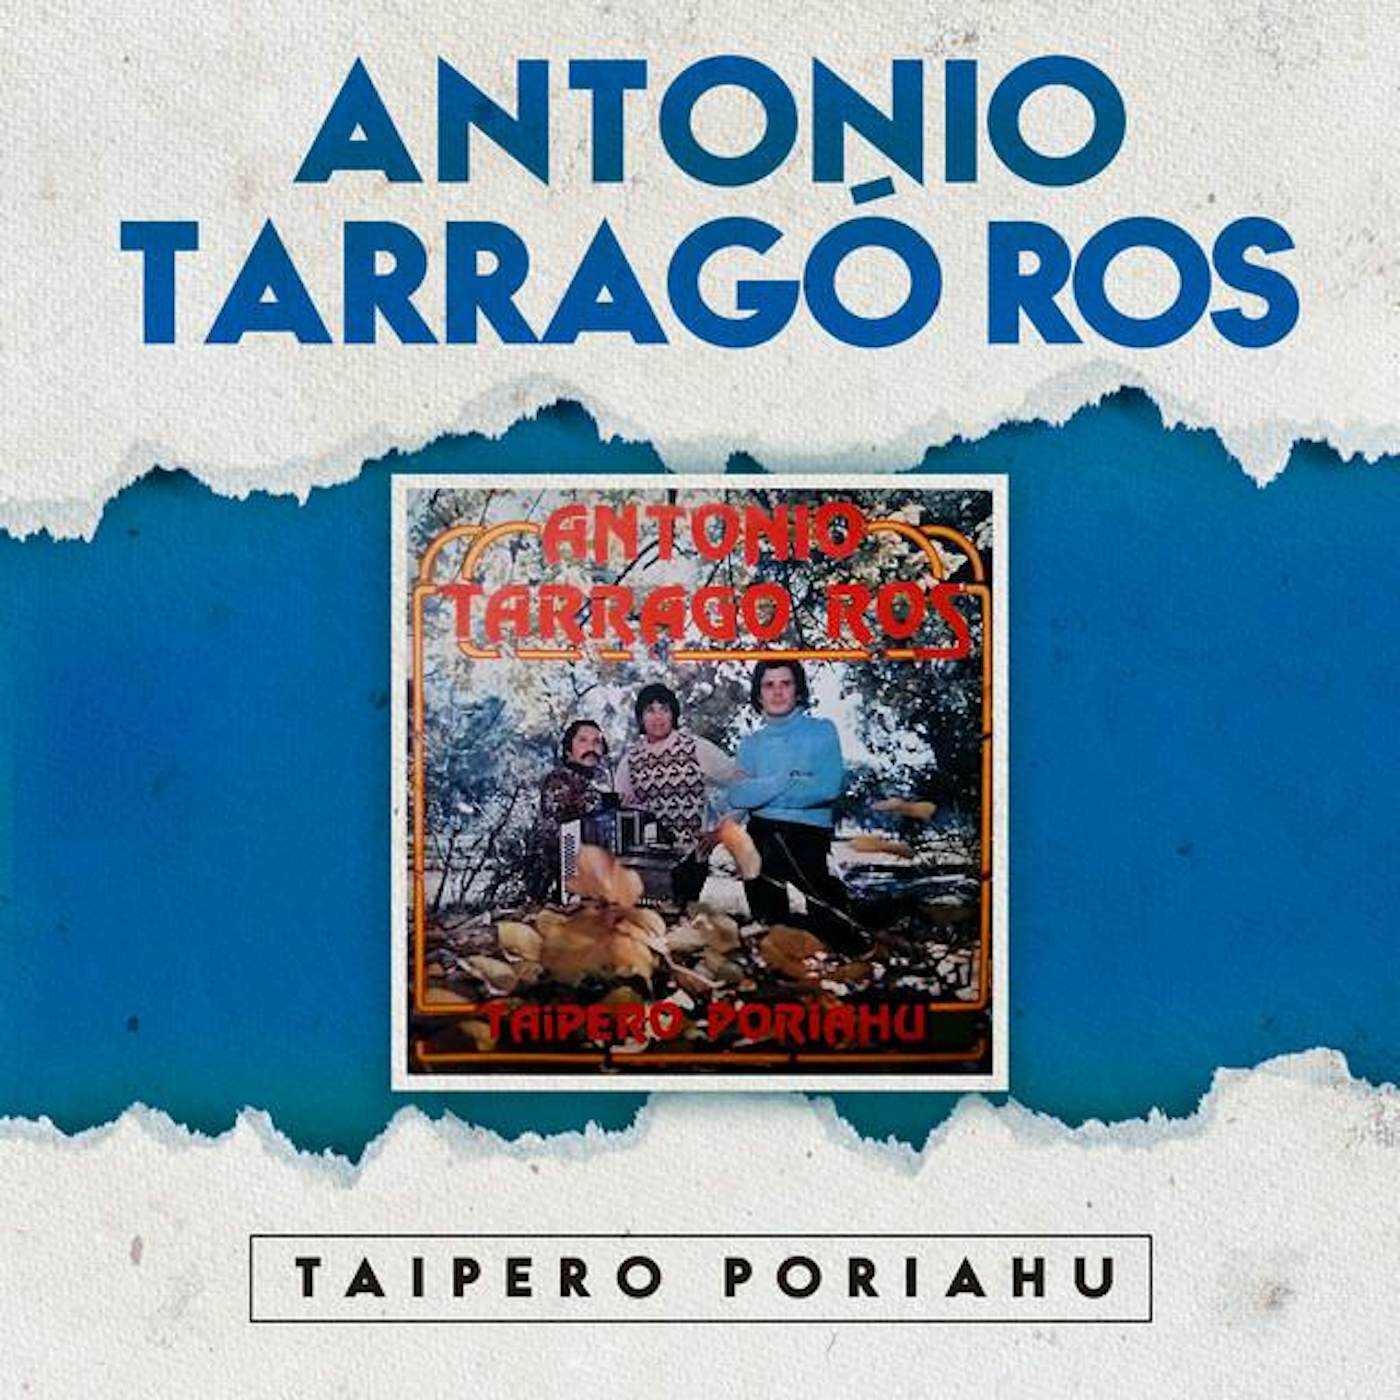 Antonio Tarragó Ros